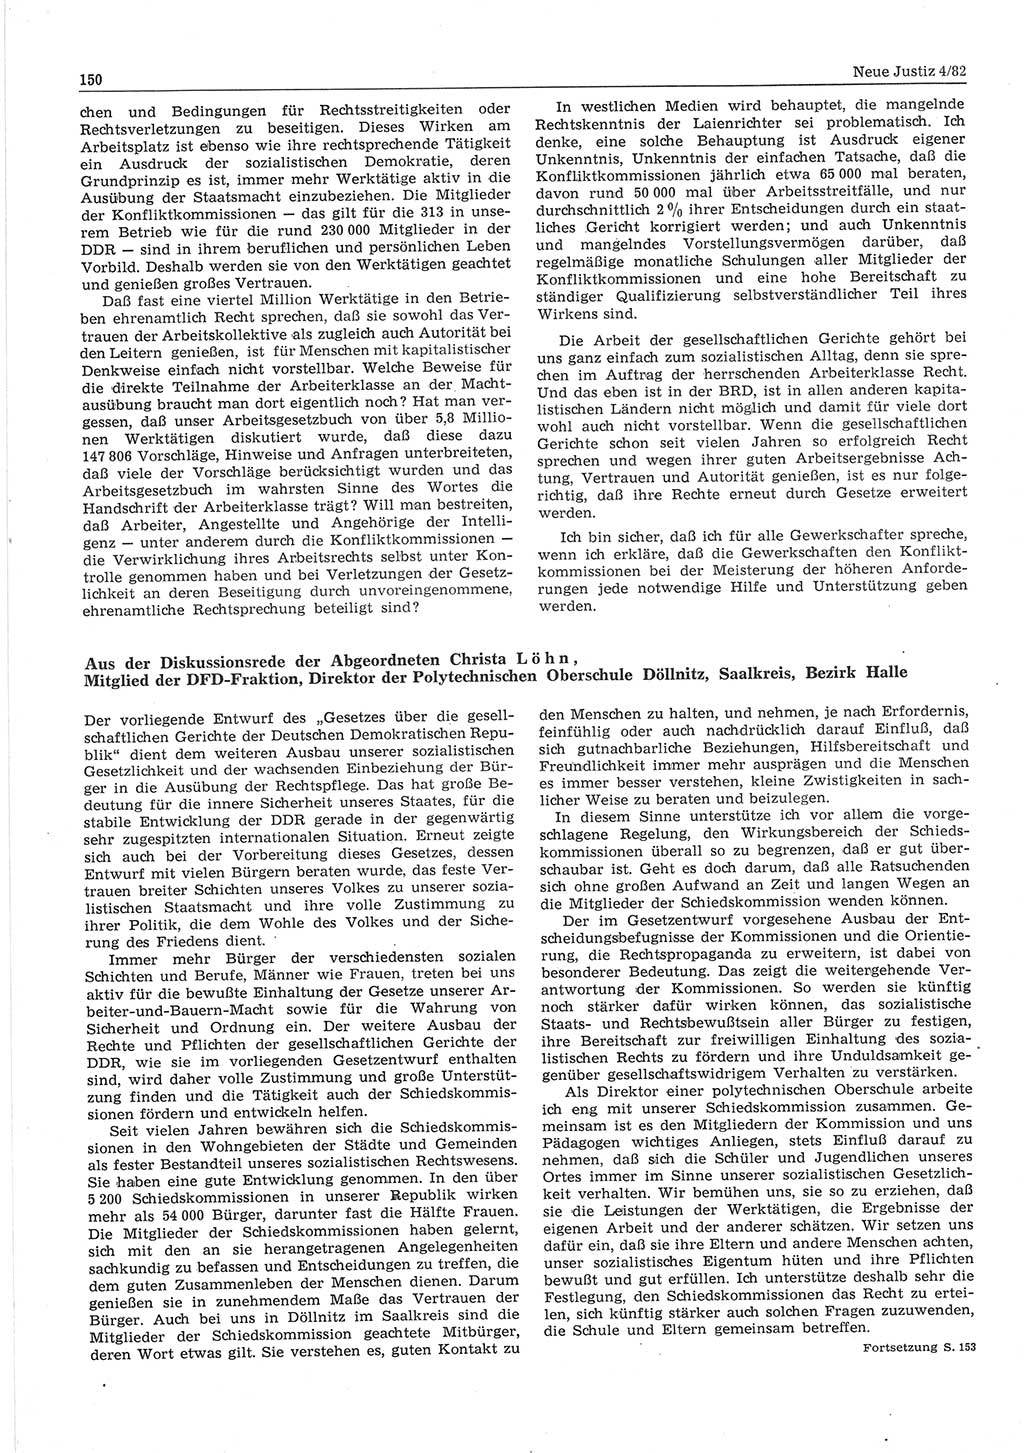 Neue Justiz (NJ), Zeitschrift für sozialistisches Recht und Gesetzlichkeit [Deutsche Demokratische Republik (DDR)], 36. Jahrgang 1982, Seite 150 (NJ DDR 1982, S. 150)